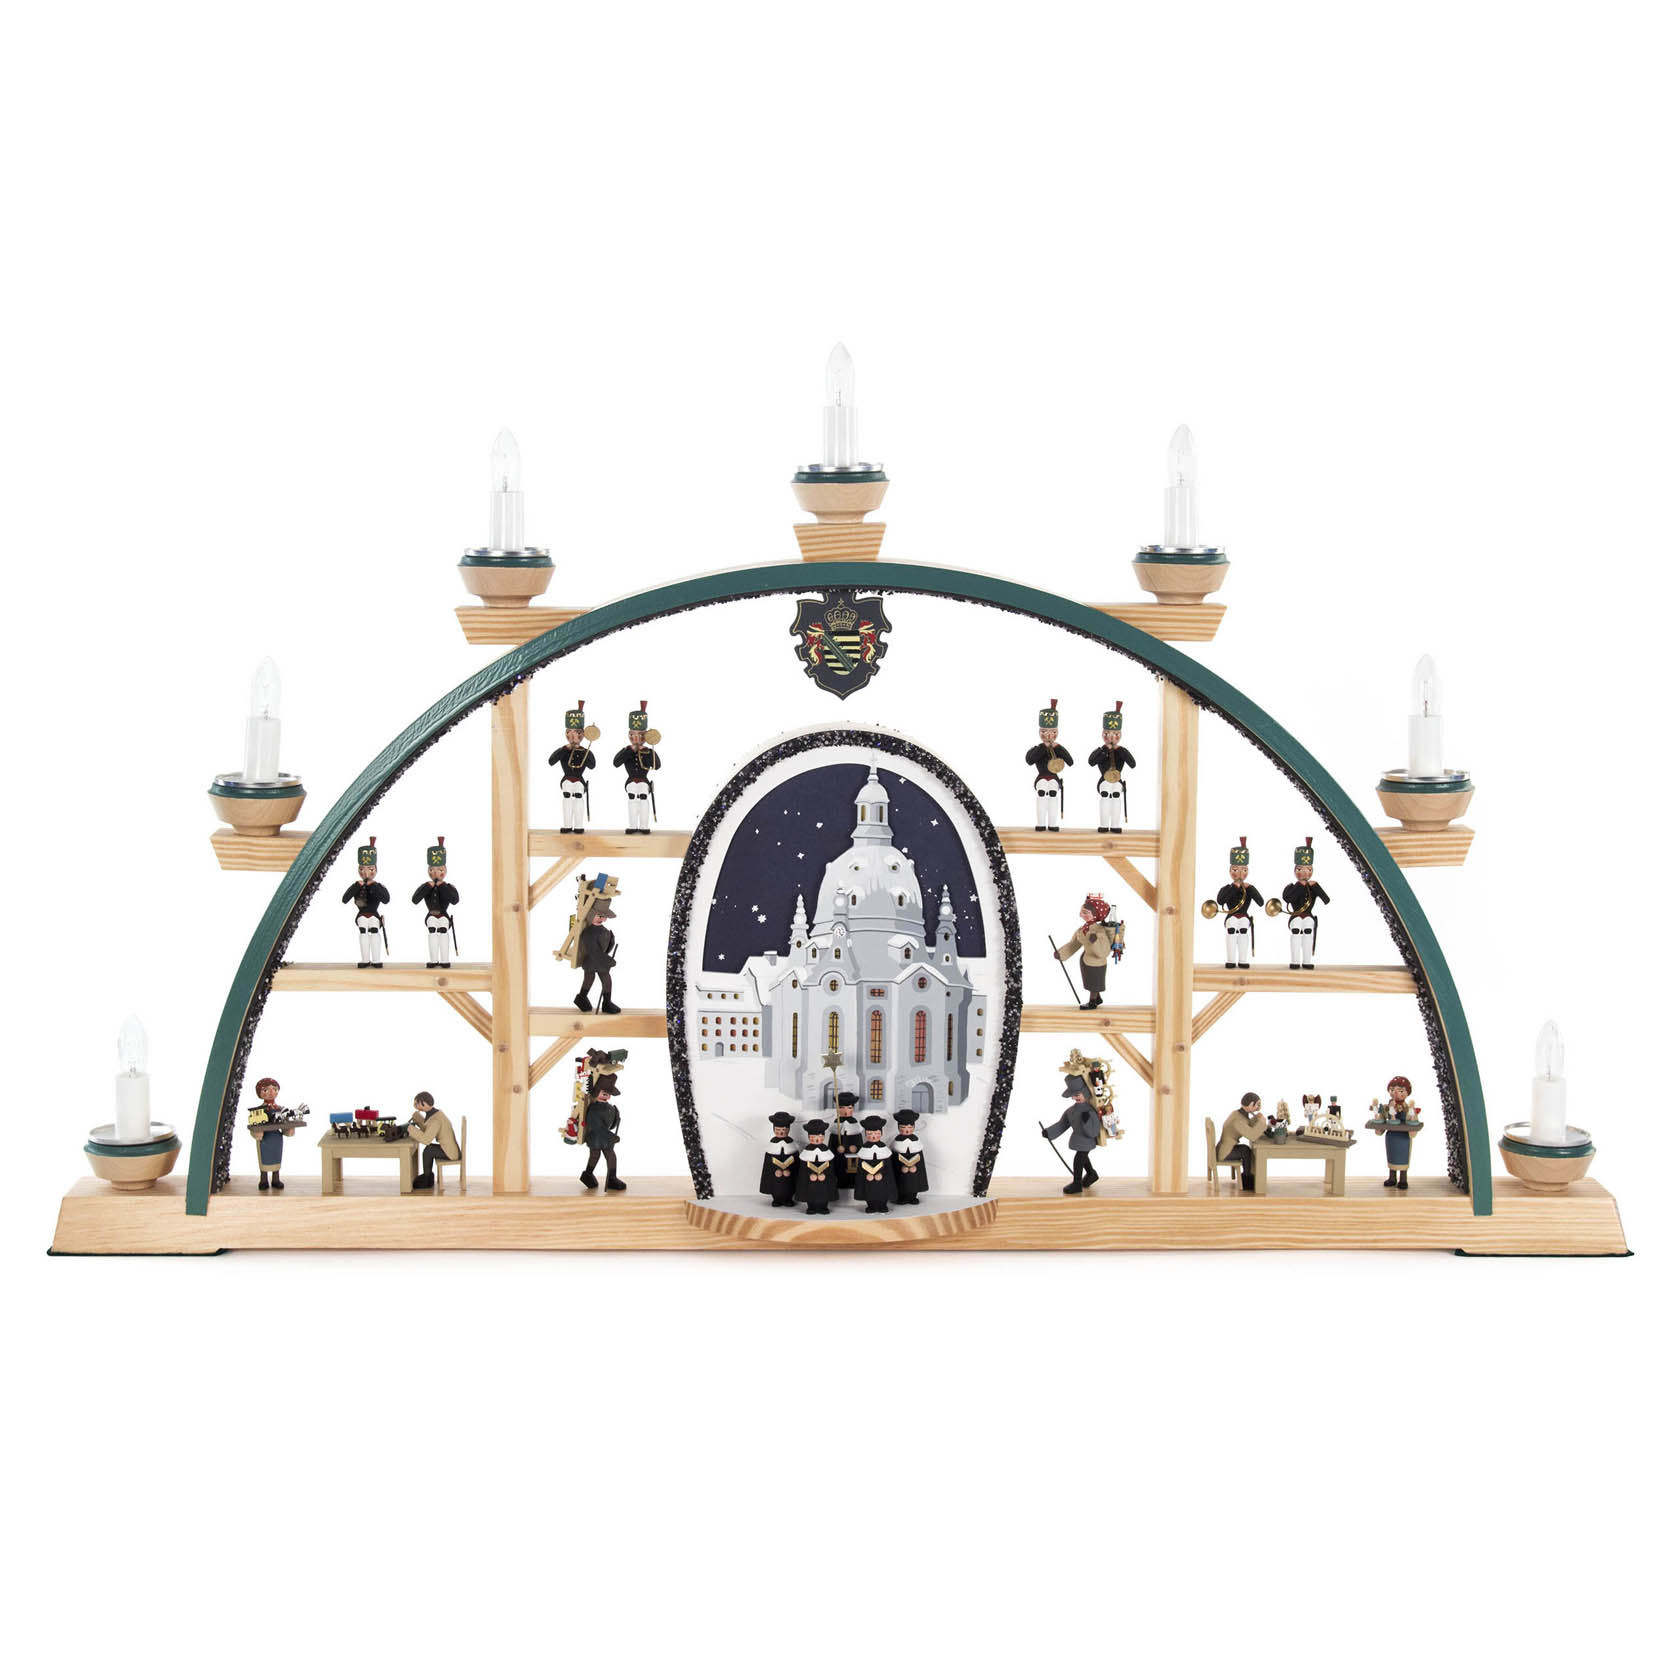 Schwibbogen mit Dresdner Frauenkirche, Kurrende und Erzgebirgsfiguren, elektrisch beleuchtet im Dregeno Online Shop günstig kaufen